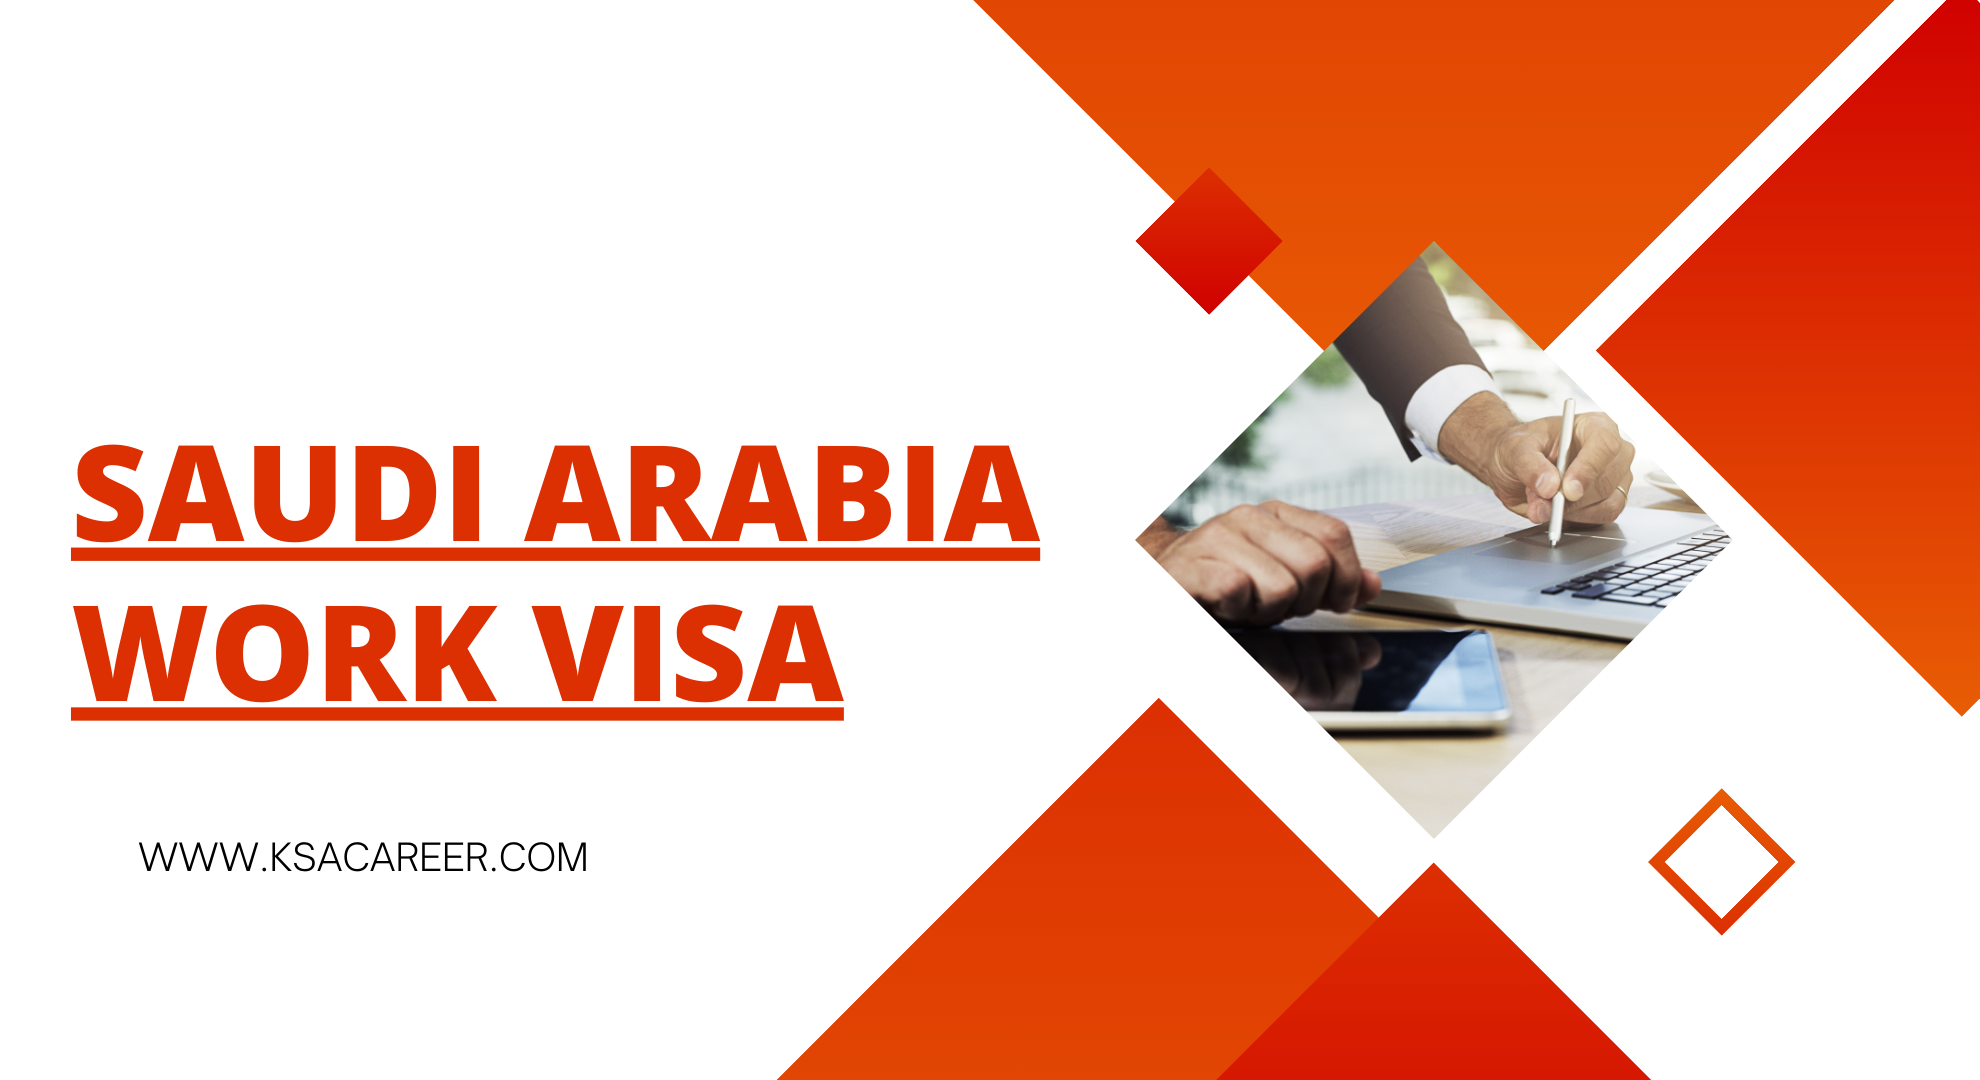 Saudi Arabia Work Visa